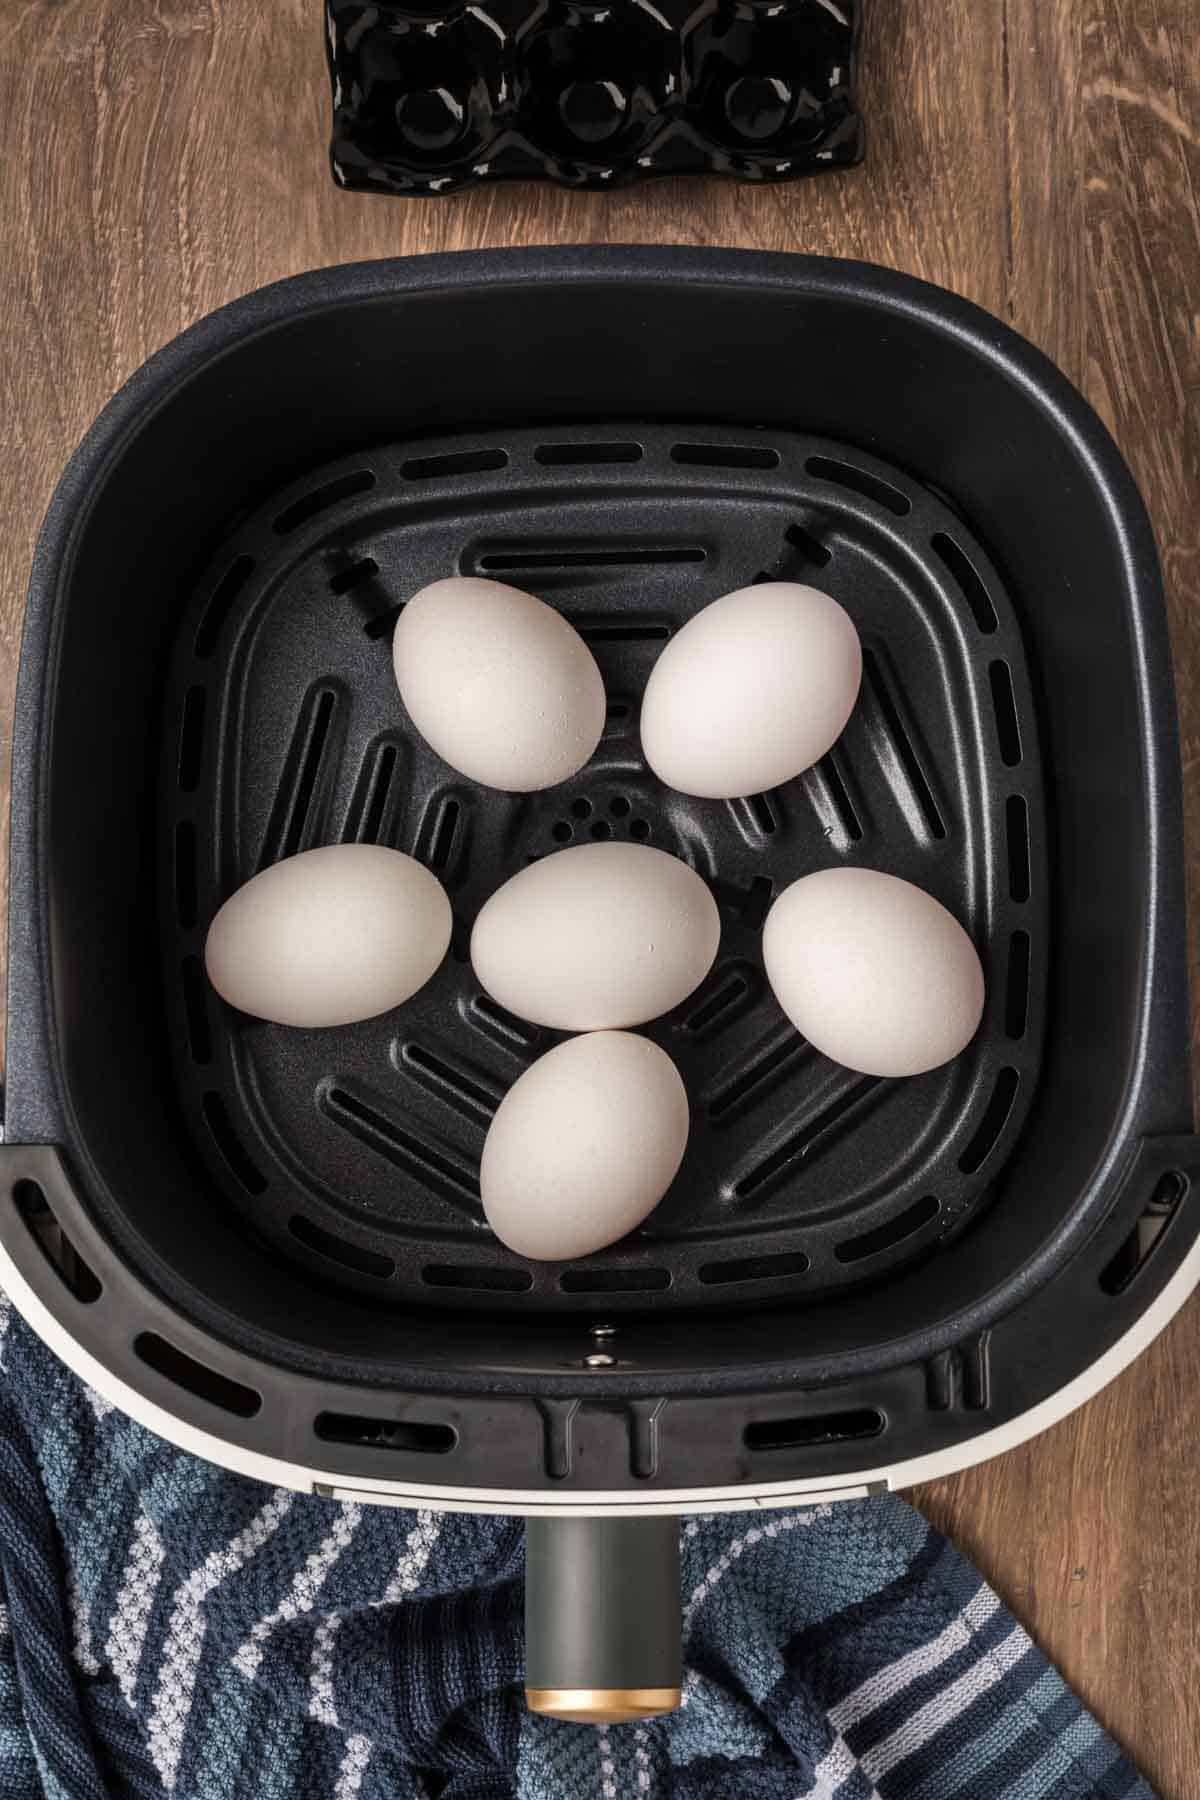 Eggs in the air fryer basket